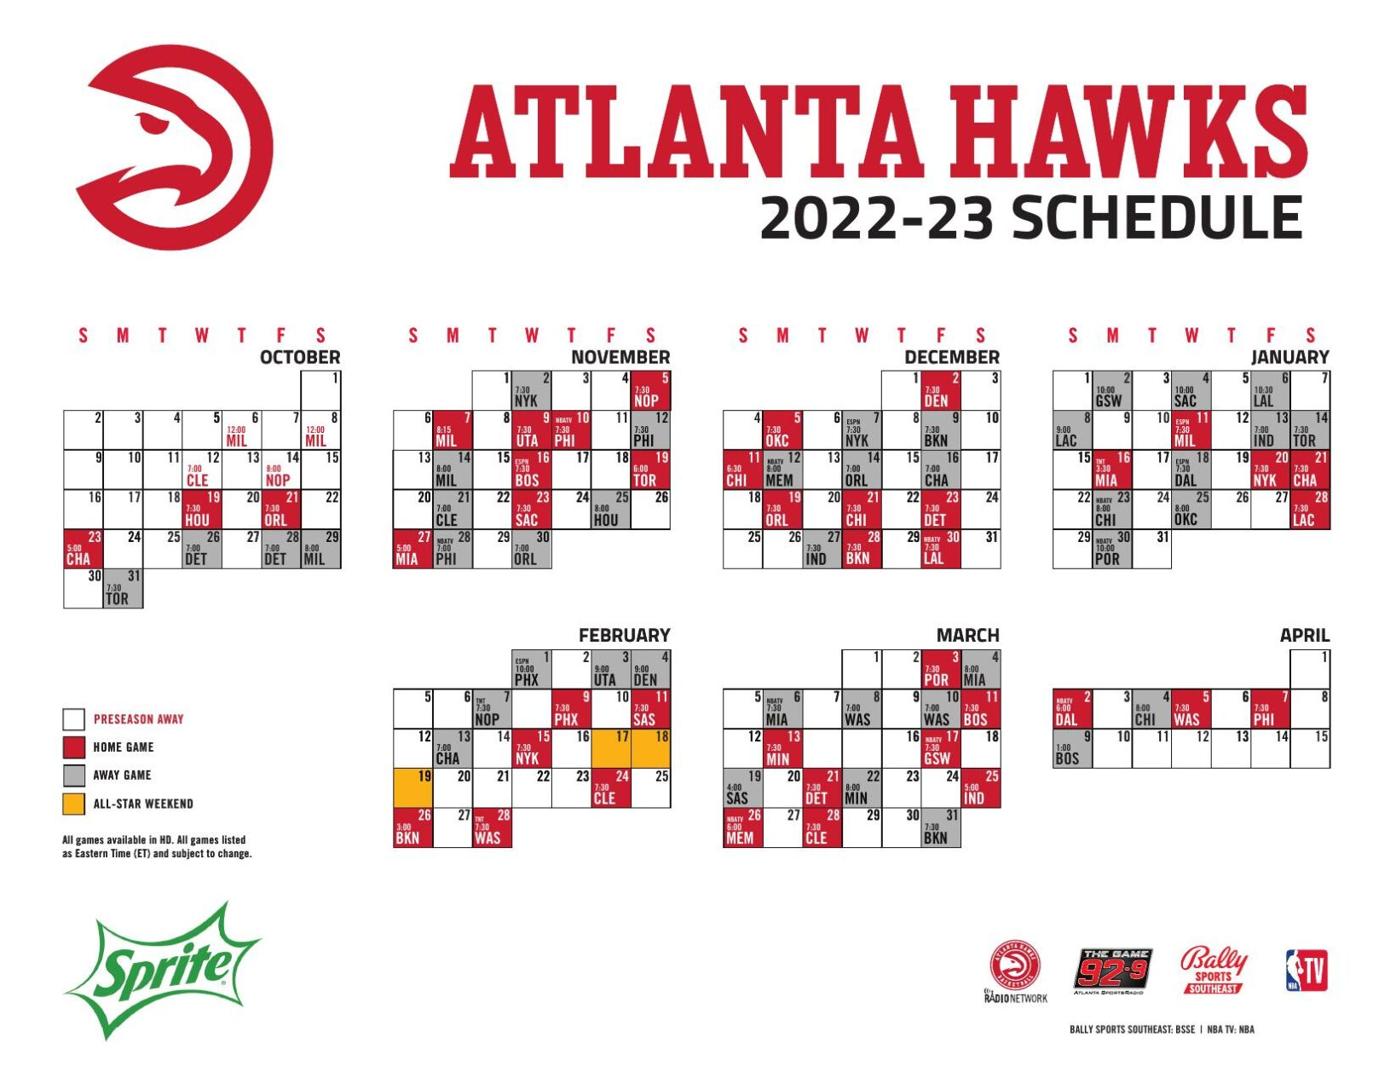 Black Hawks release 2022-23 schedule